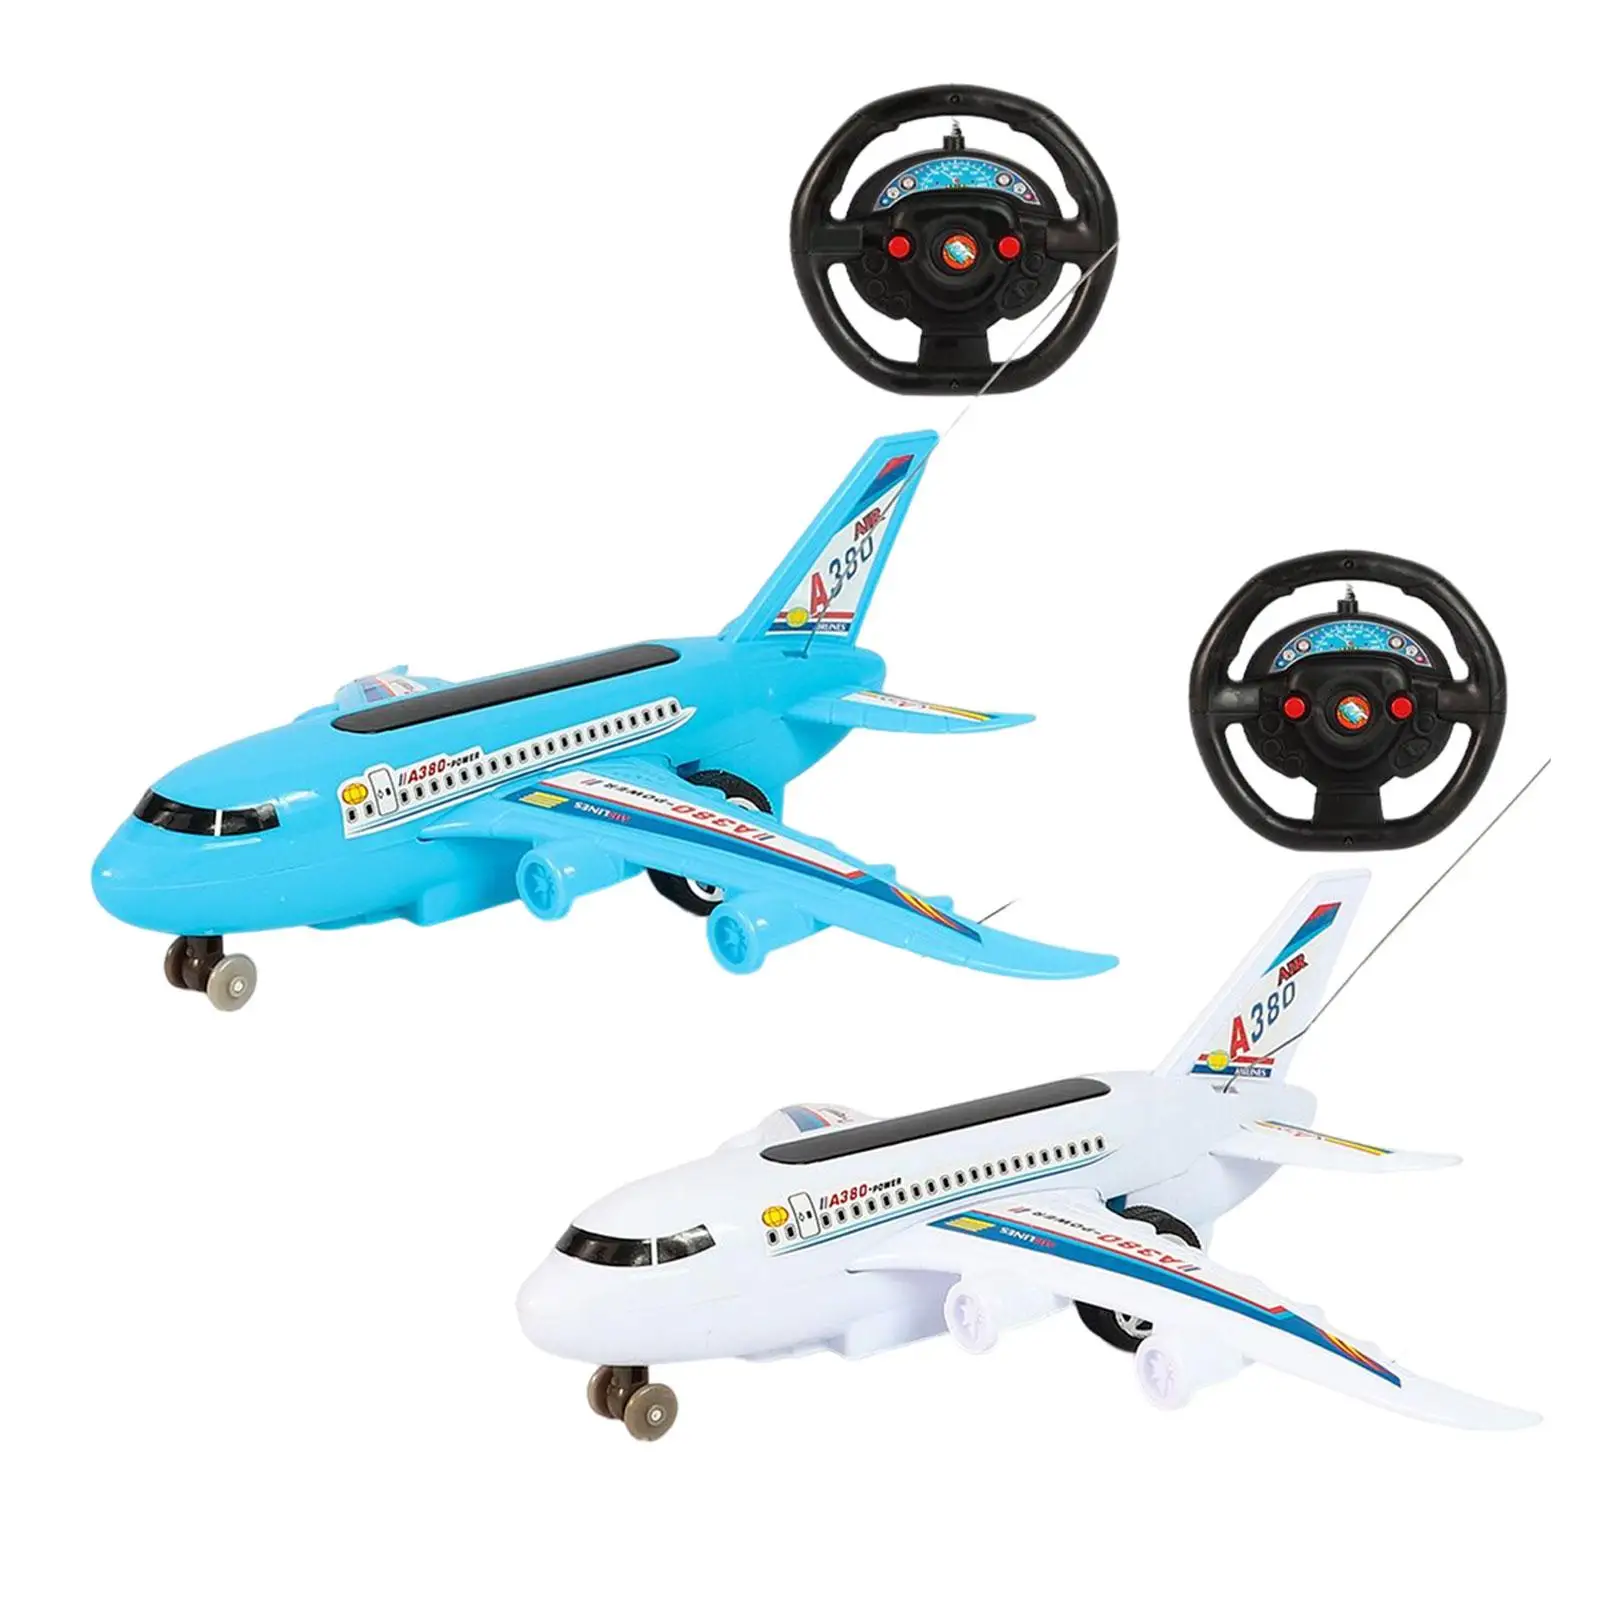 

Радиоуправляемый самолет вперед/назад игрушечный самолет прост в эксплуатации для начинающих девочек